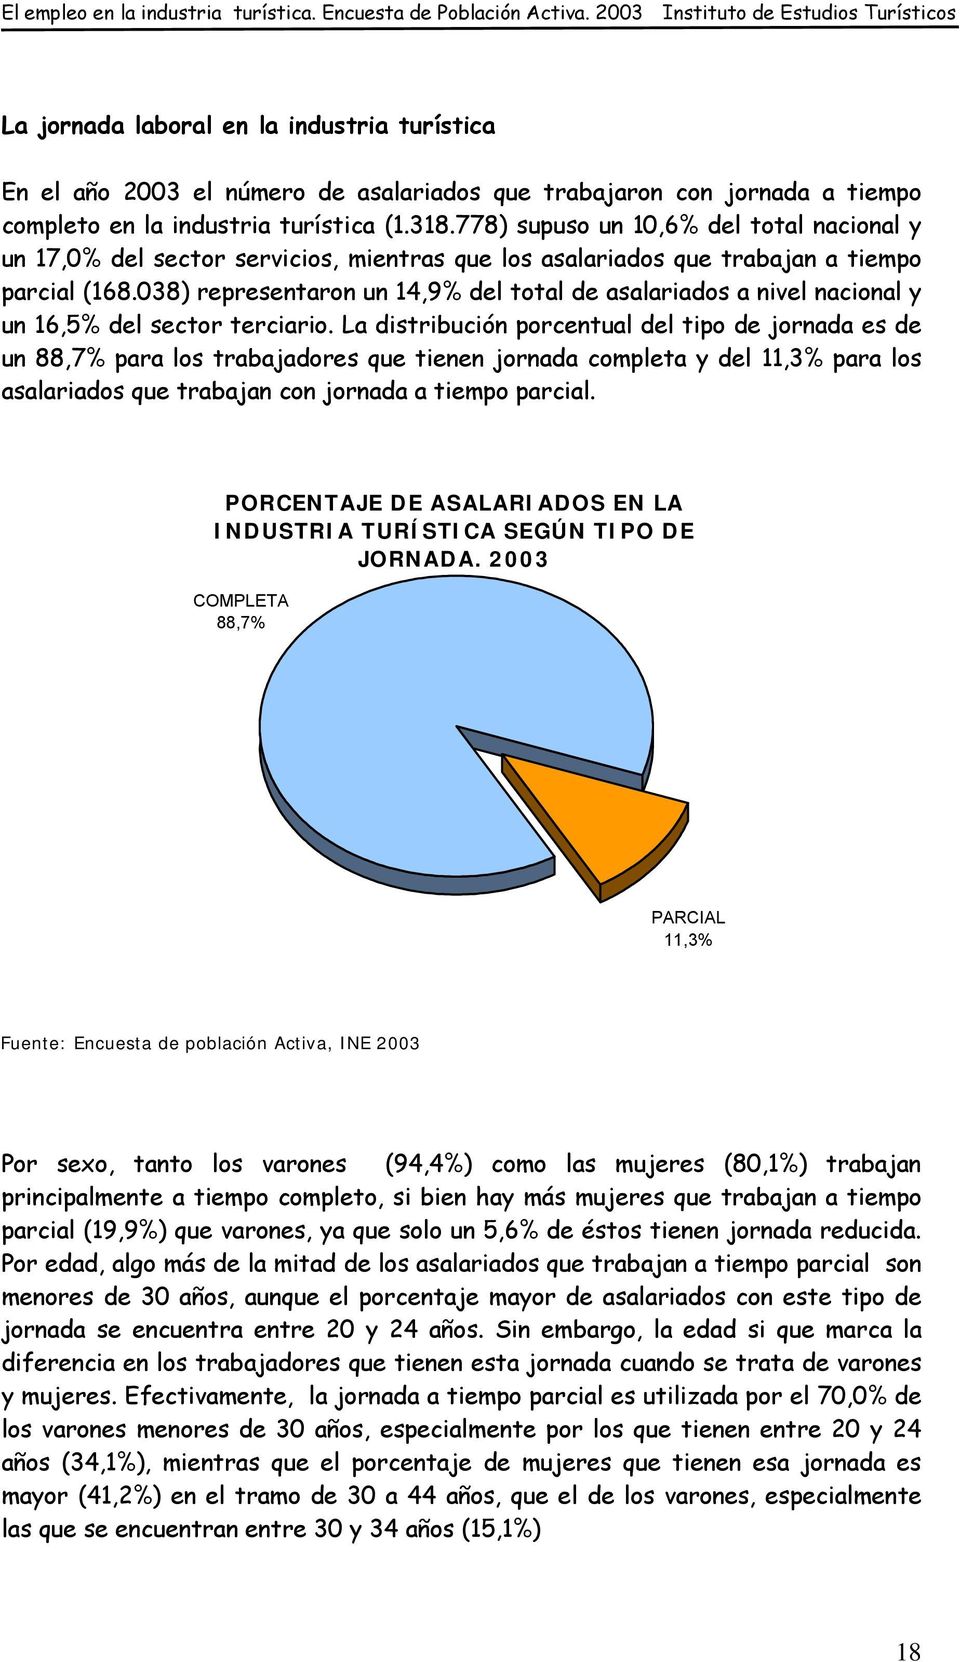 038) representaron un 14,9% del total de asalariados a nivel nacional y un 16,5% del sector terciario.